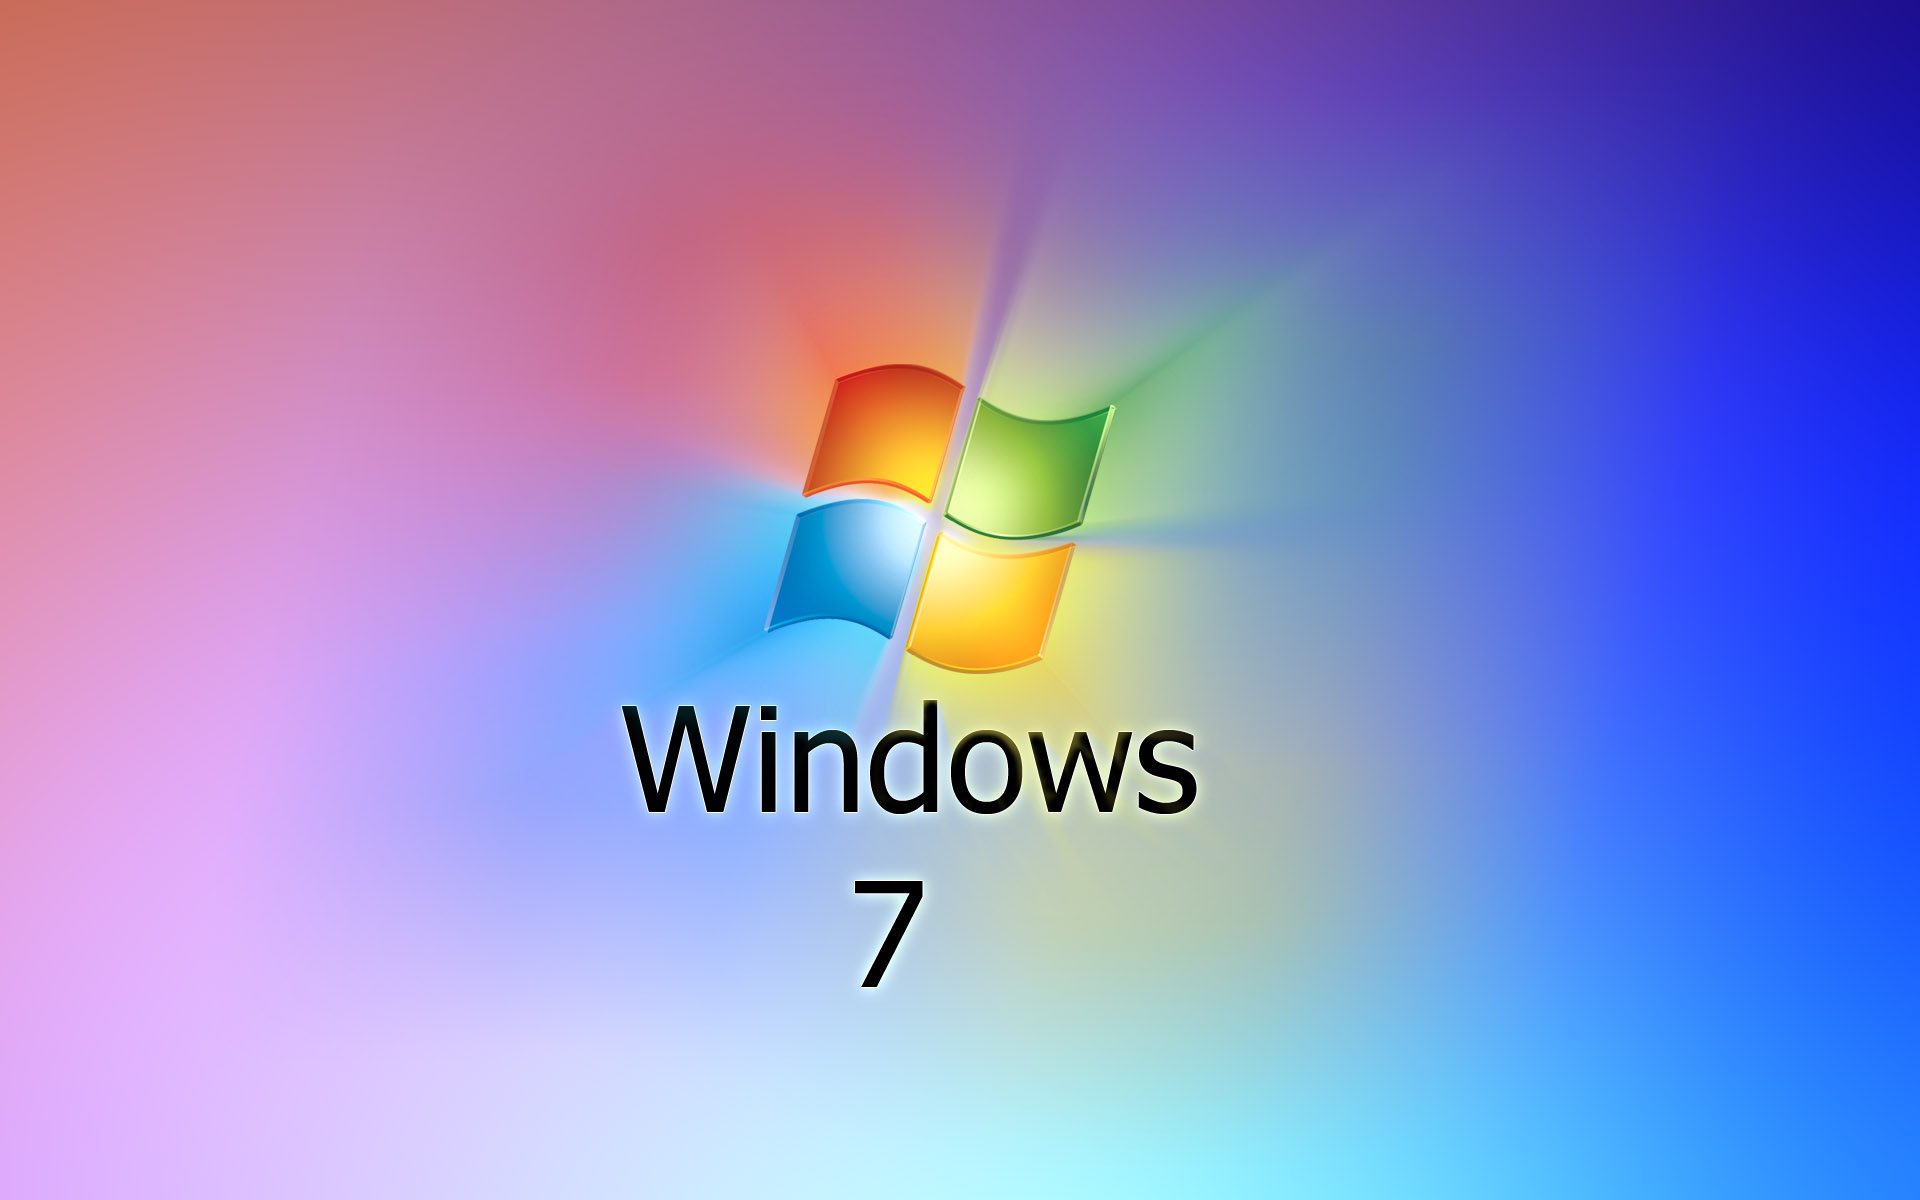 壁纸1920x1200Windows7 3 12壁纸 Windows7壁纸 Windows7图片 Windows7素材 系统壁纸 系统图库 系统图片素材桌面壁纸